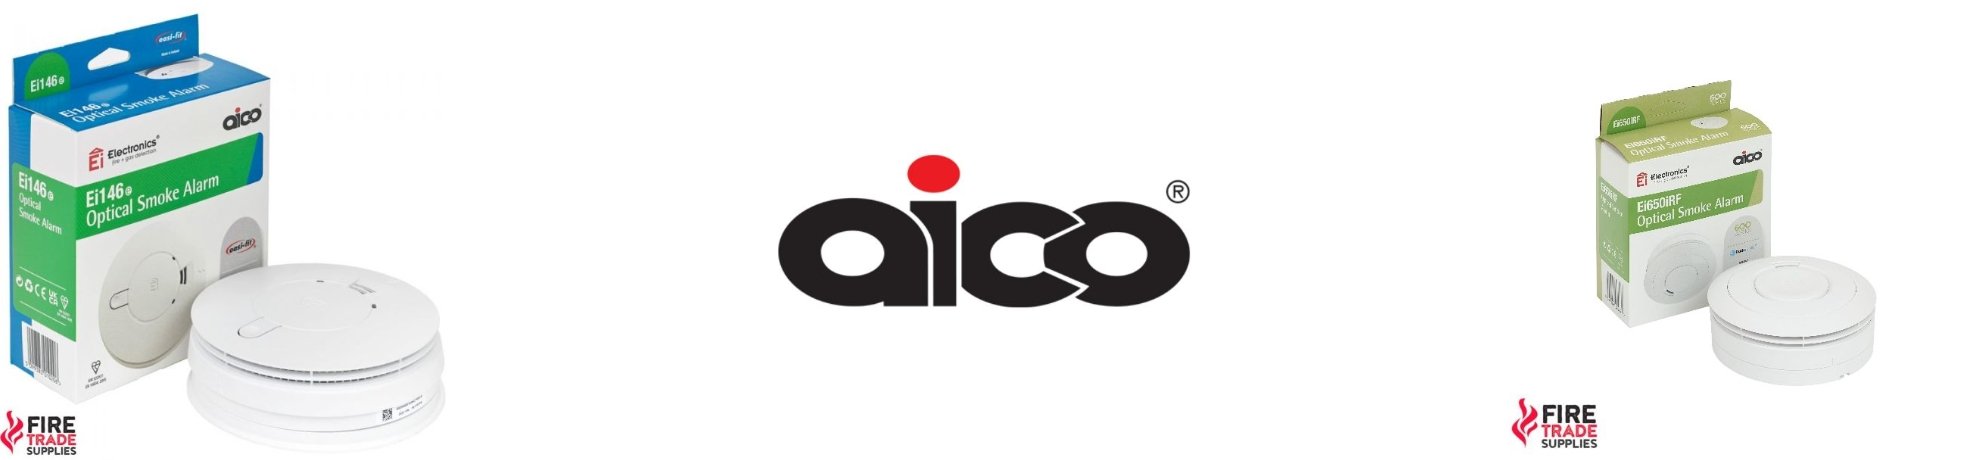 Aico Alarm - Fire Trade Supplies